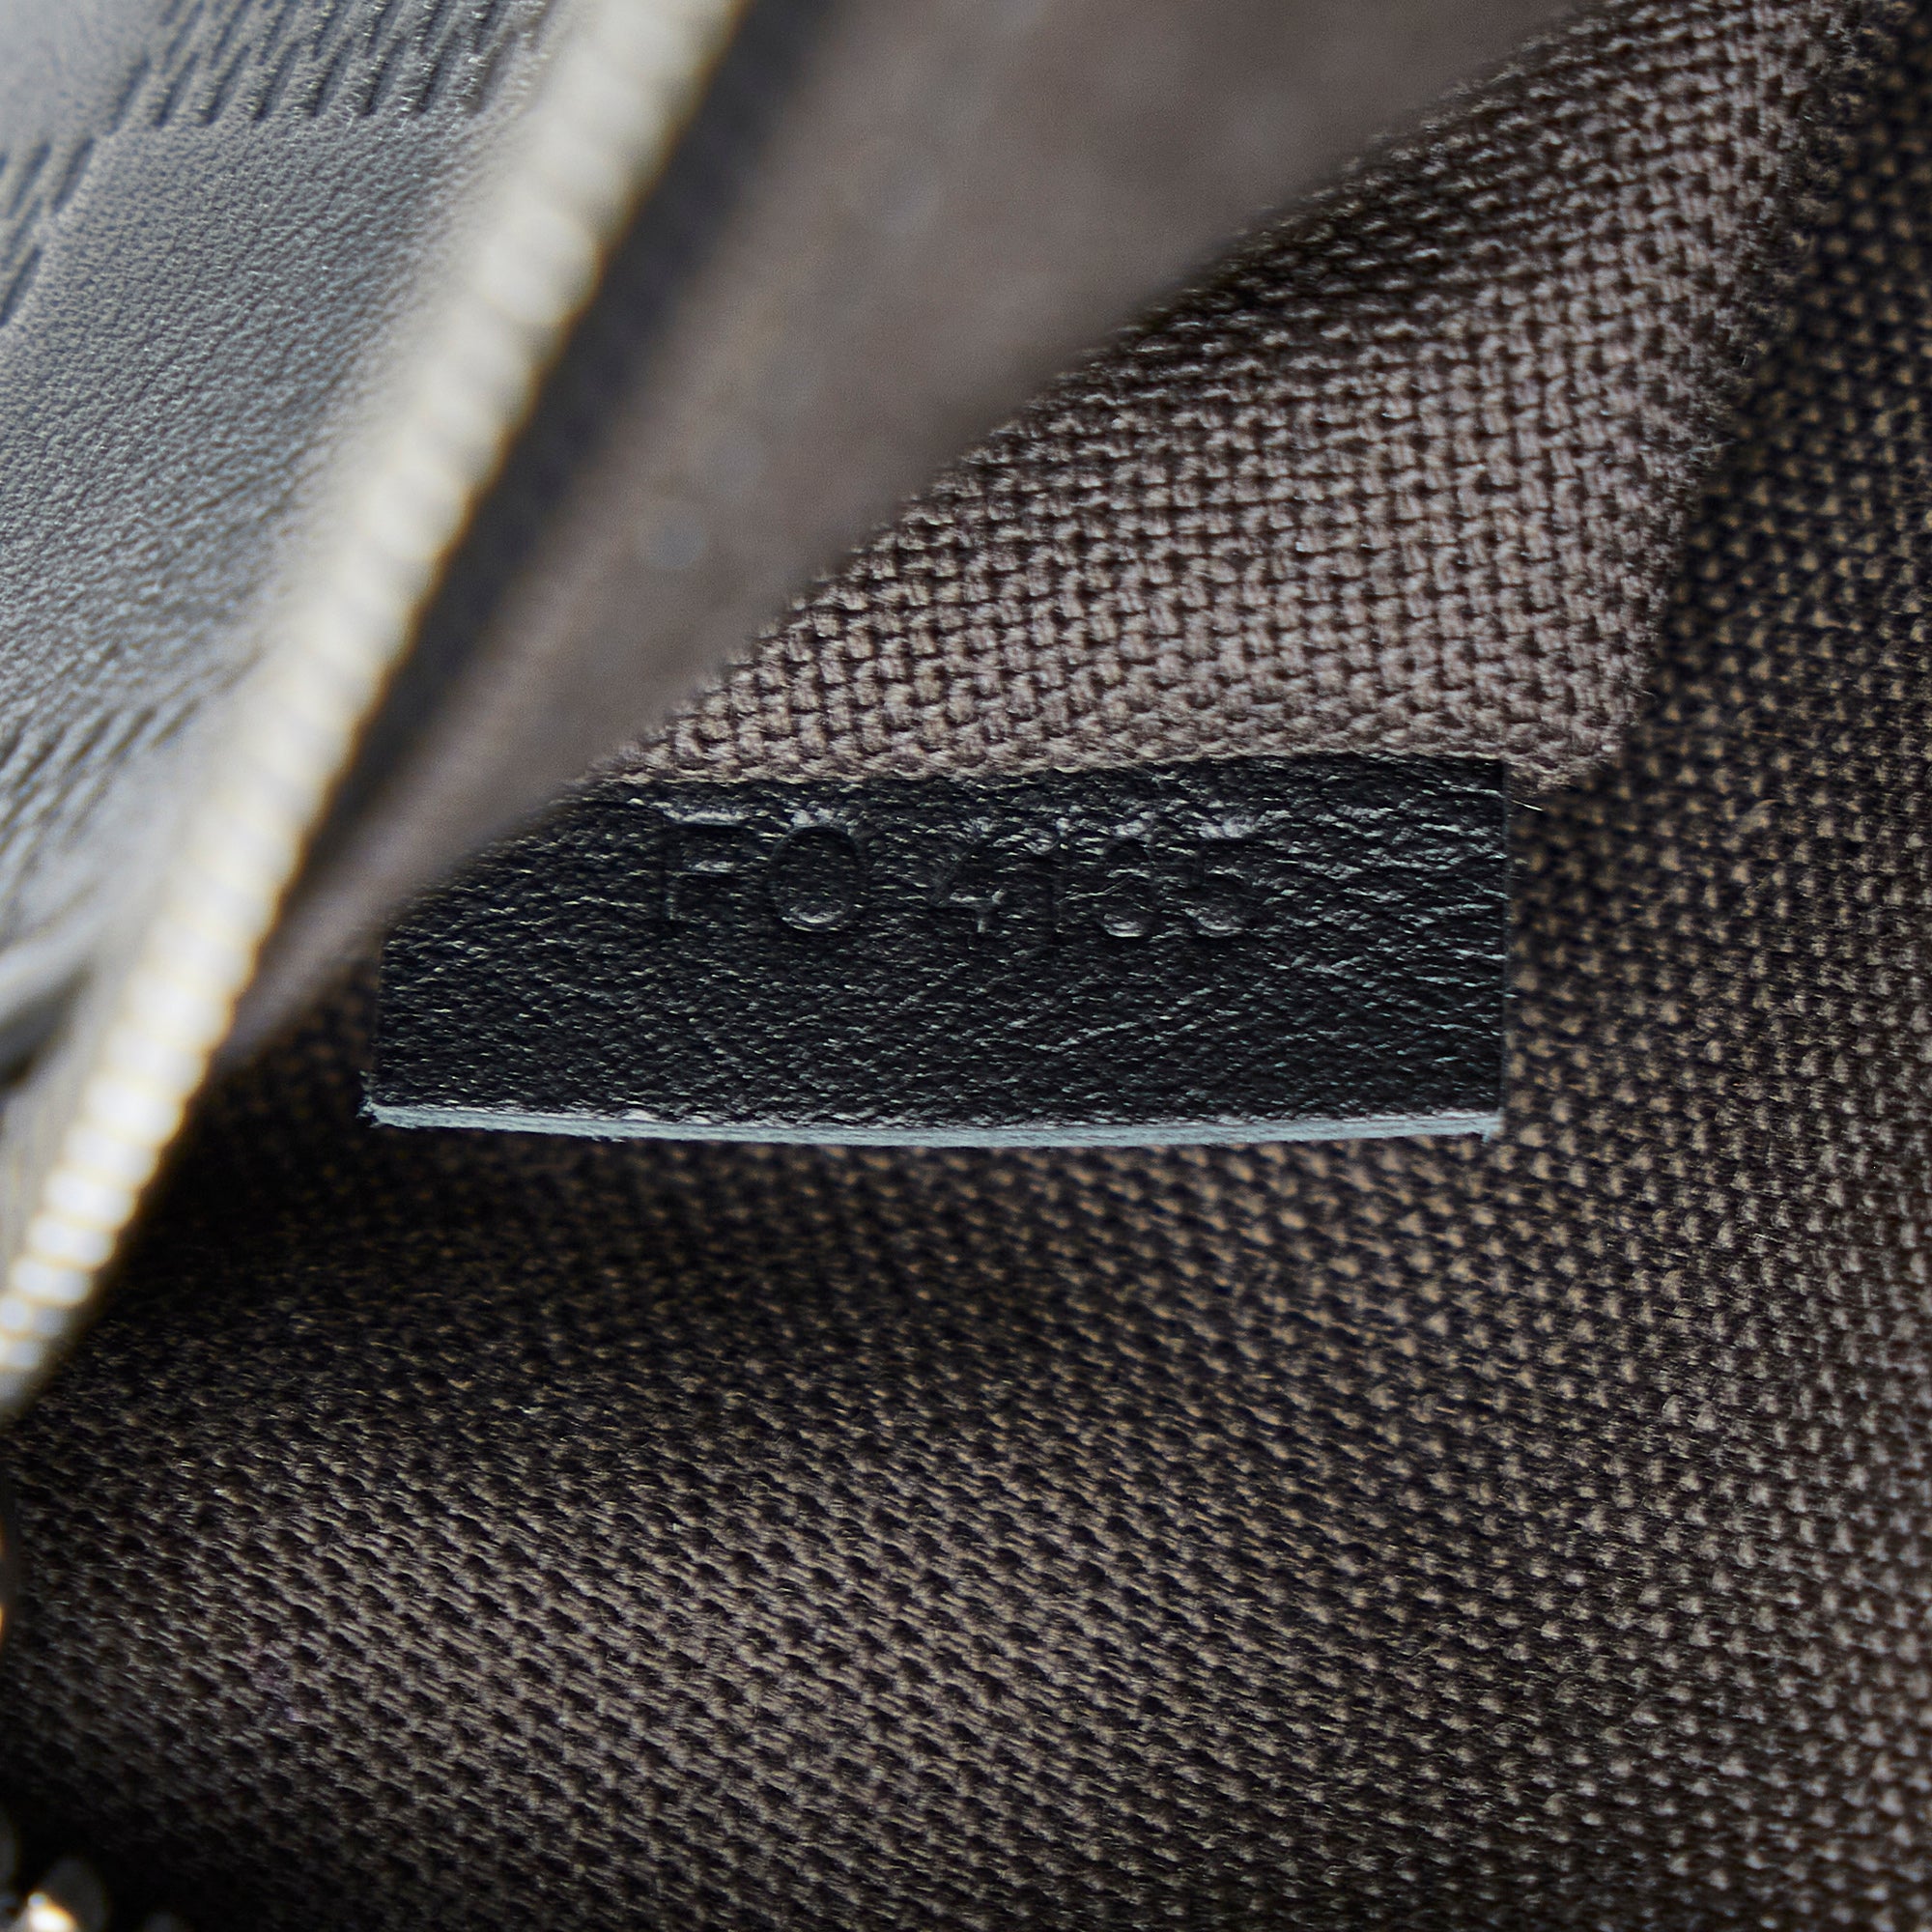 Louis Vuitton Black Damier Infini Leather Ambler Bum Bag Waist